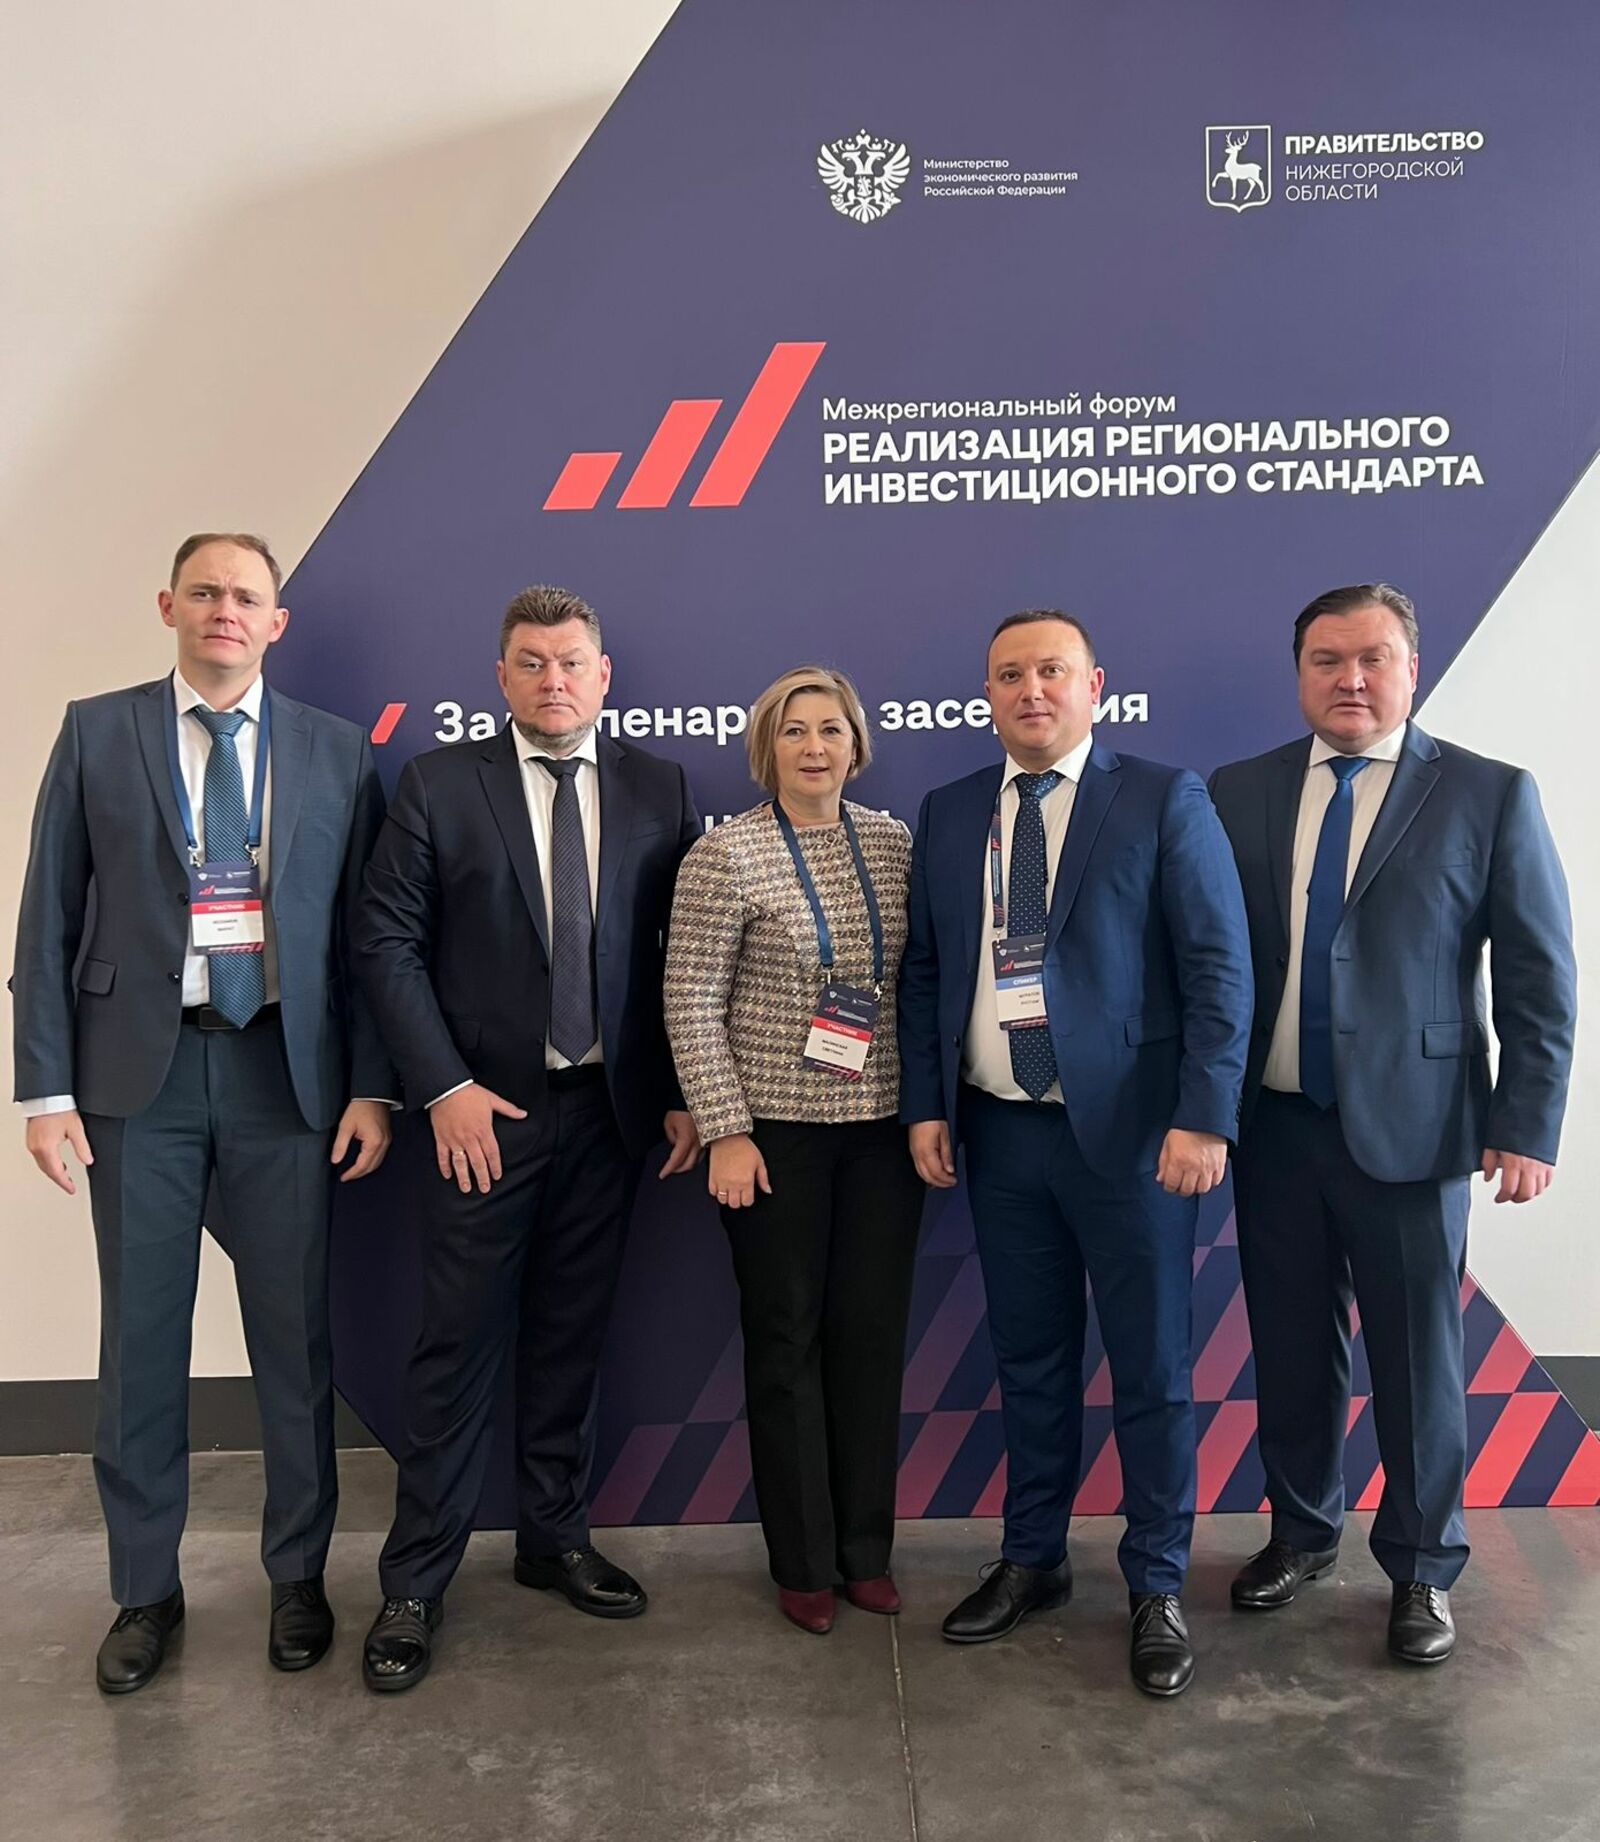 Практики Башкортостана по взаимодействию с инвесторами признаны лучшими на Межрегиональном форуме «Реализация регионального инвестиционного стандарта»